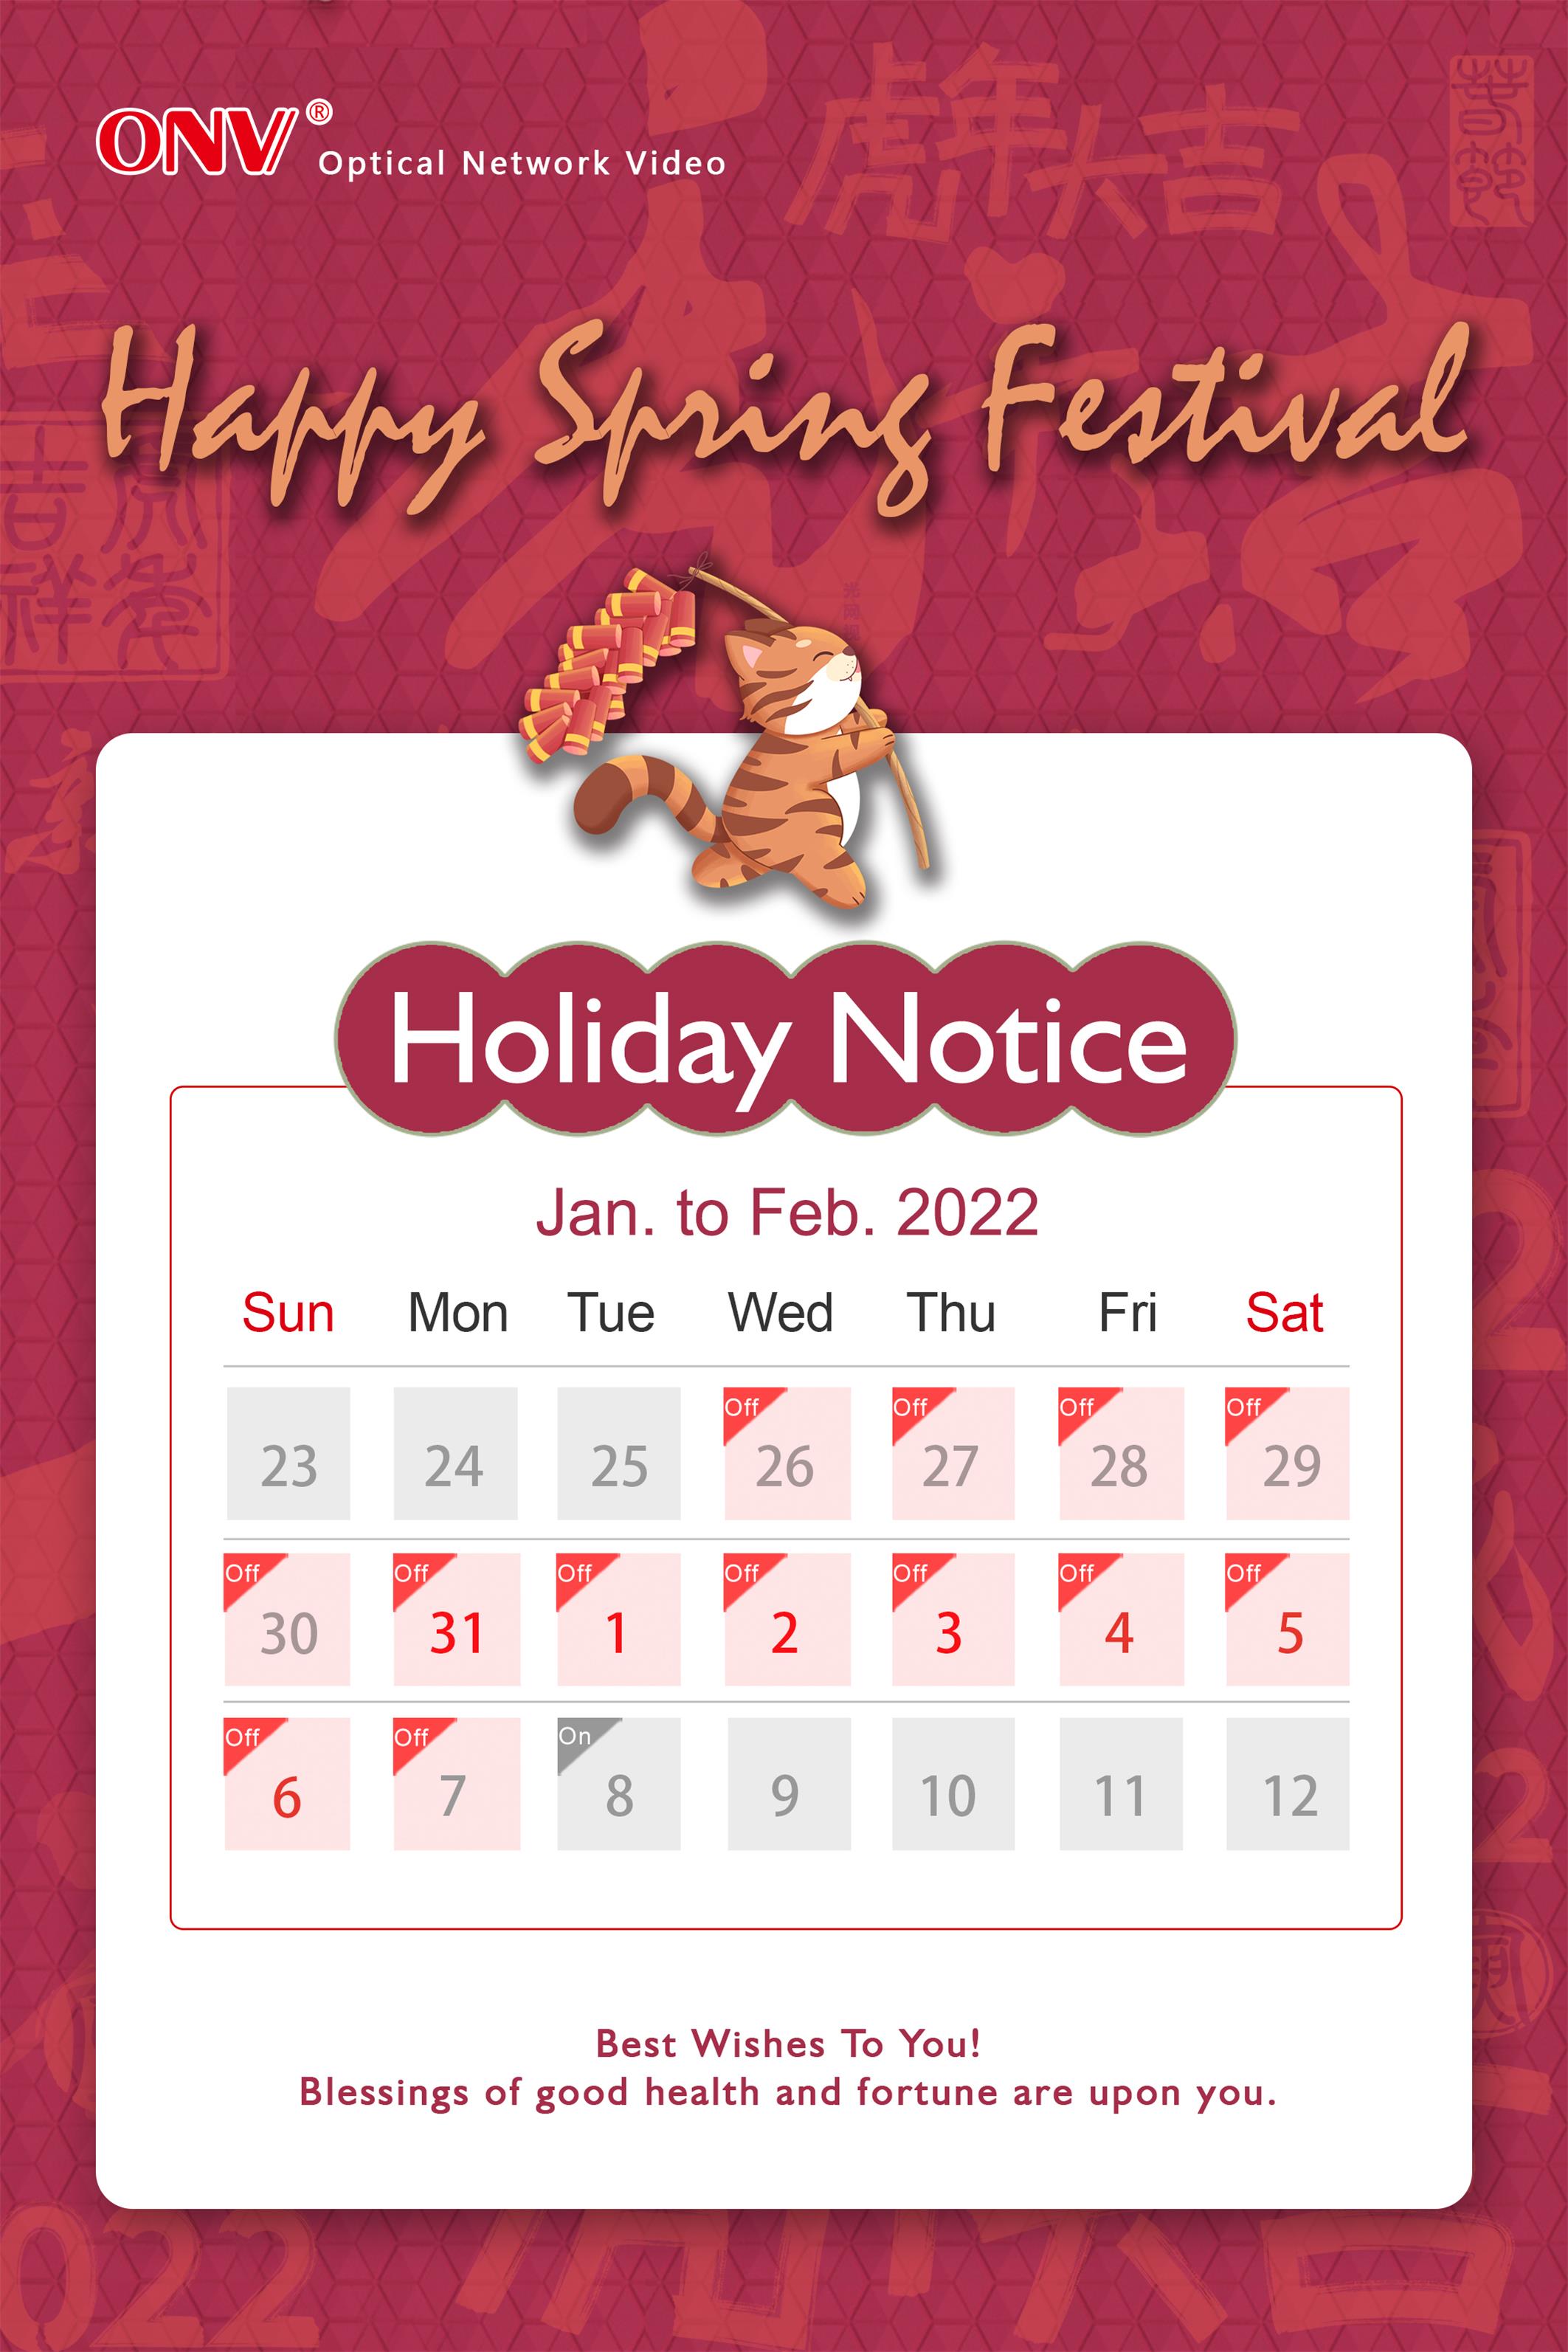 Spring Festival Holiday Notice 2022，ONV